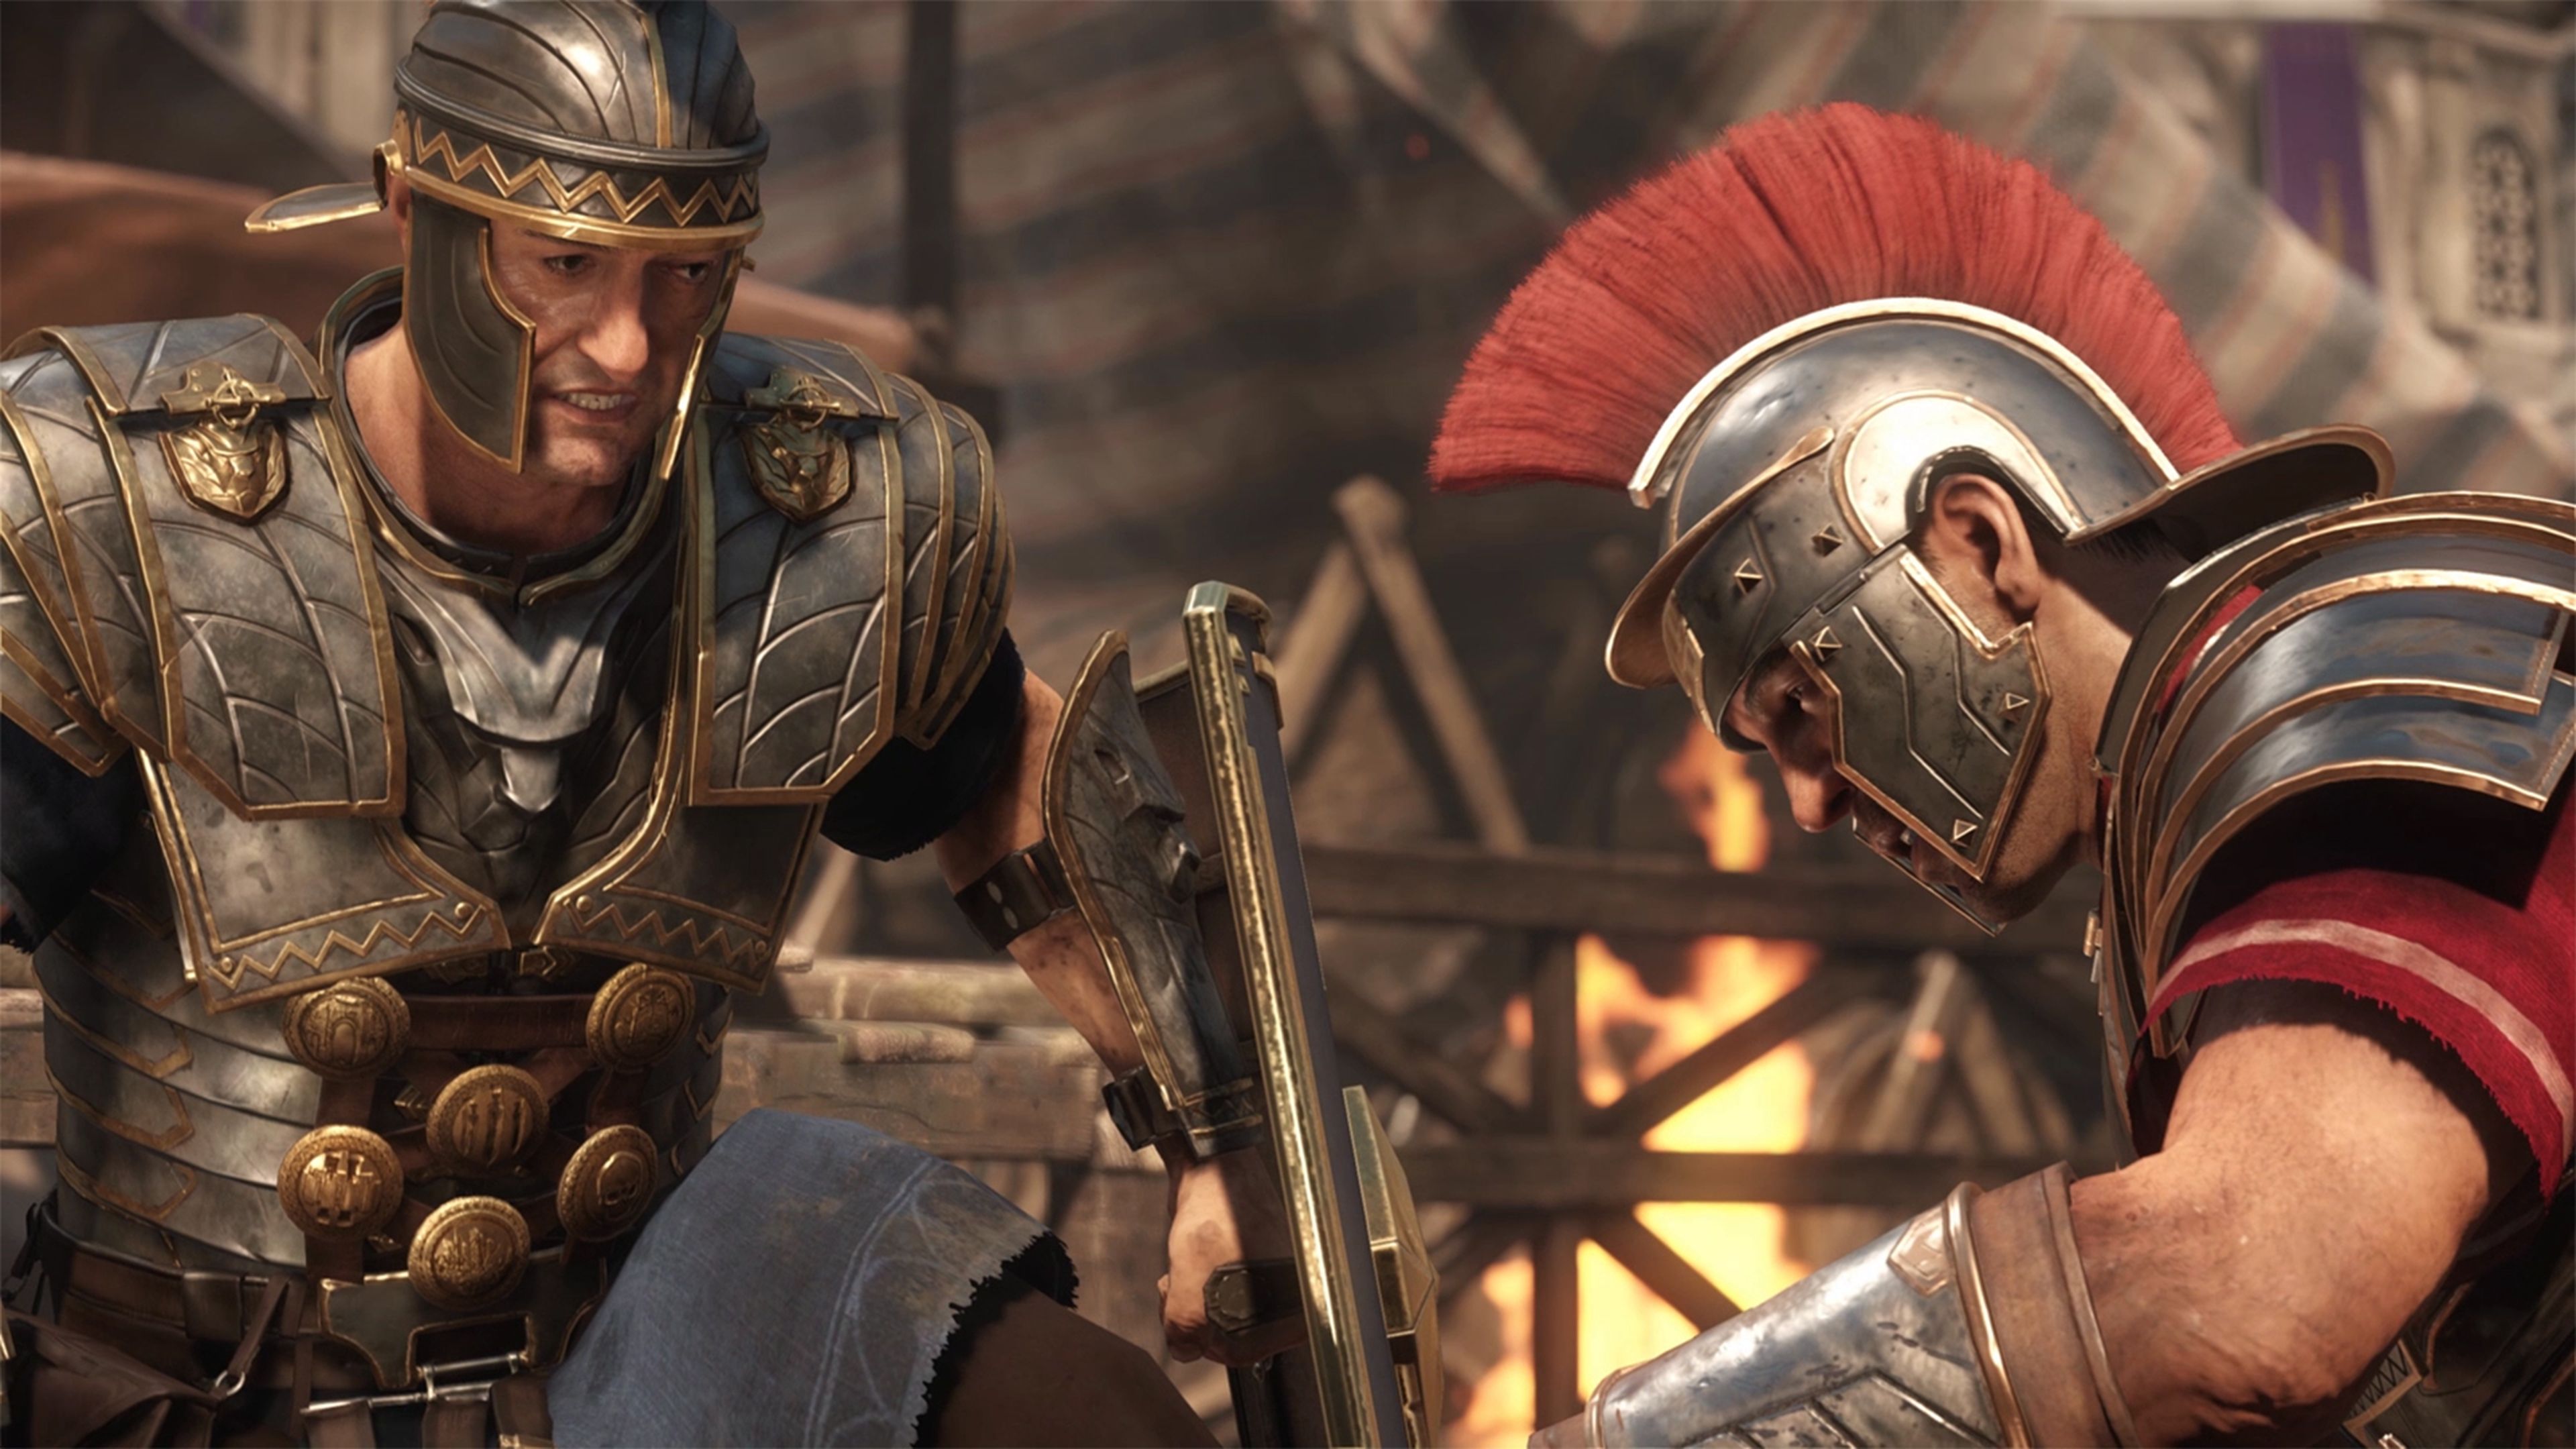 Crytek defiende la resolución 900p de Ryse Son of Rome